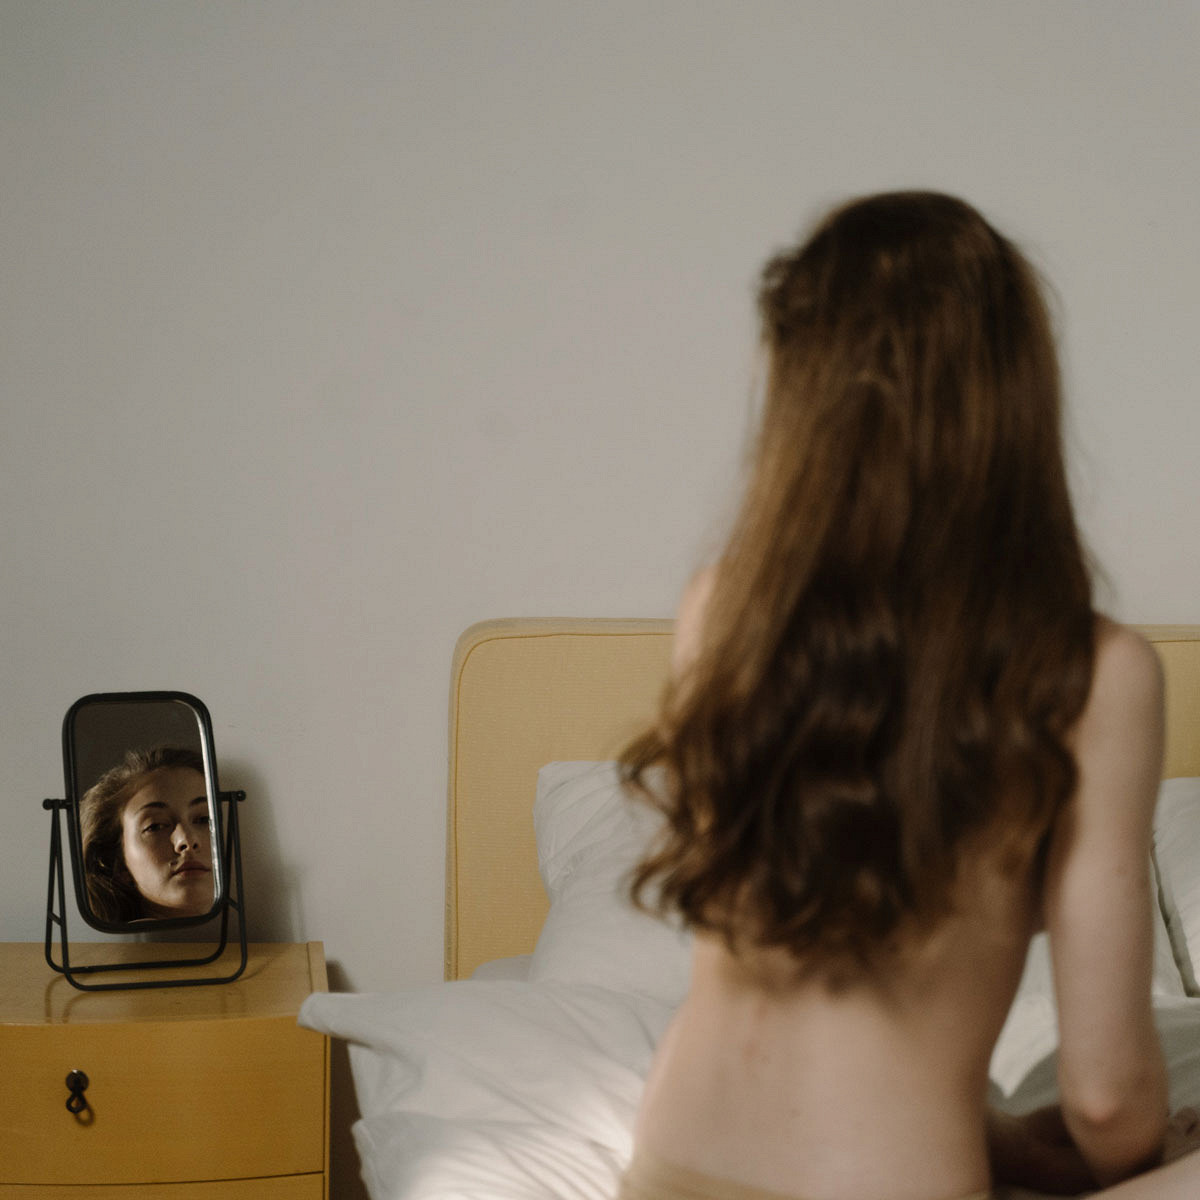 Все под одеждой голые»: истории девушек и парней, чьи интимные фото попали  в интернет - Афиша Daily